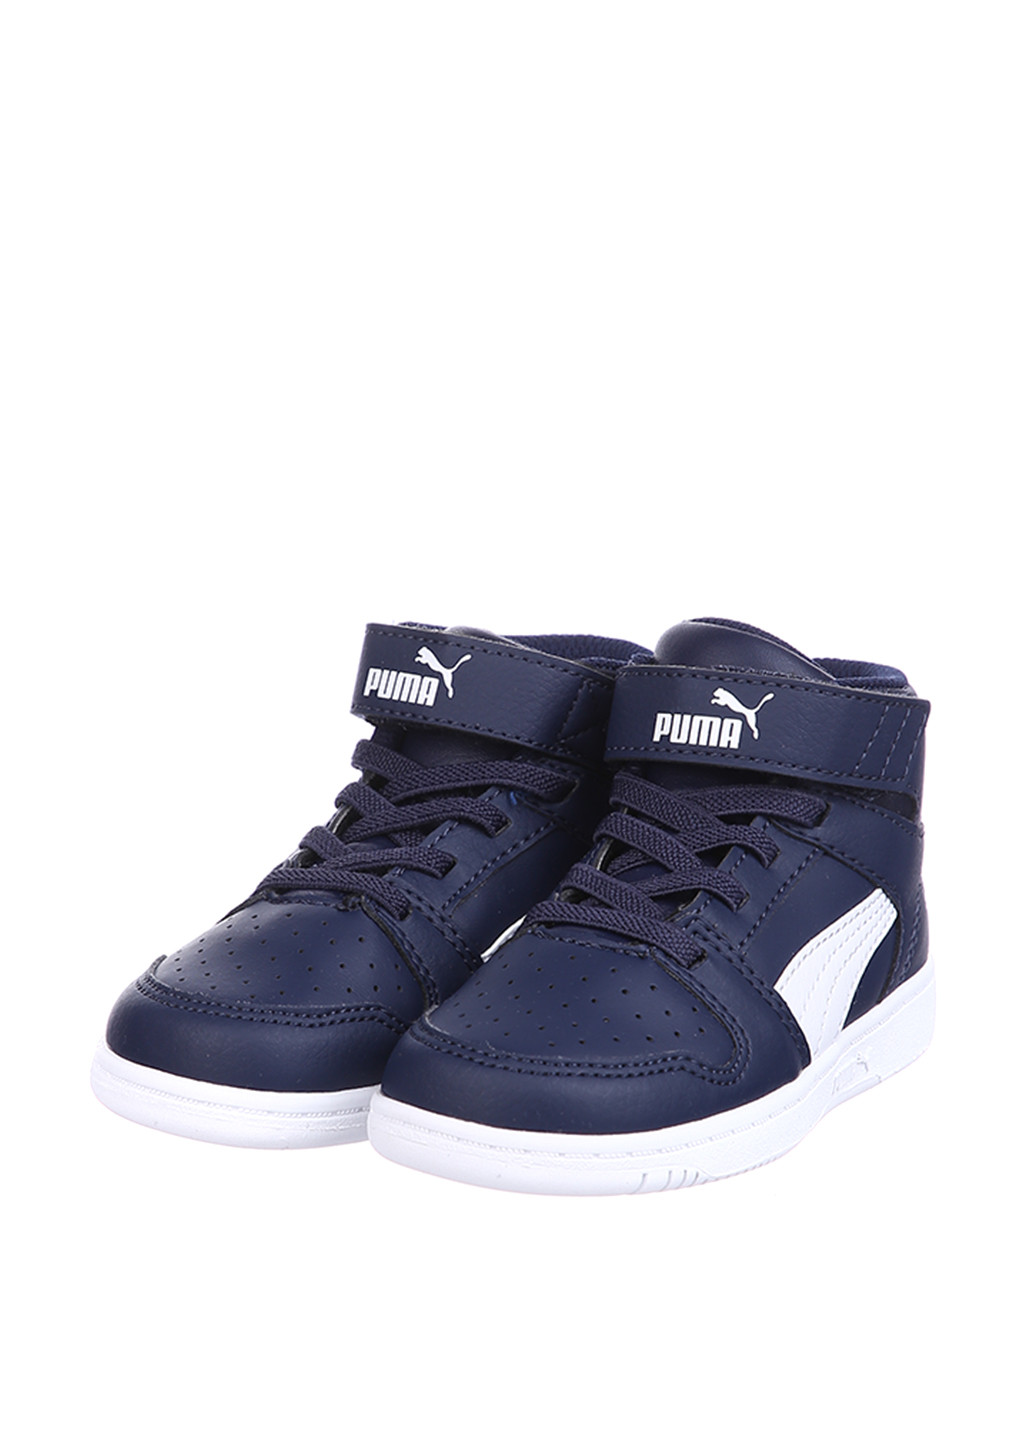 Темно-синие всесезон кроссовки Puma Puma Rebound Layup SL V Inf